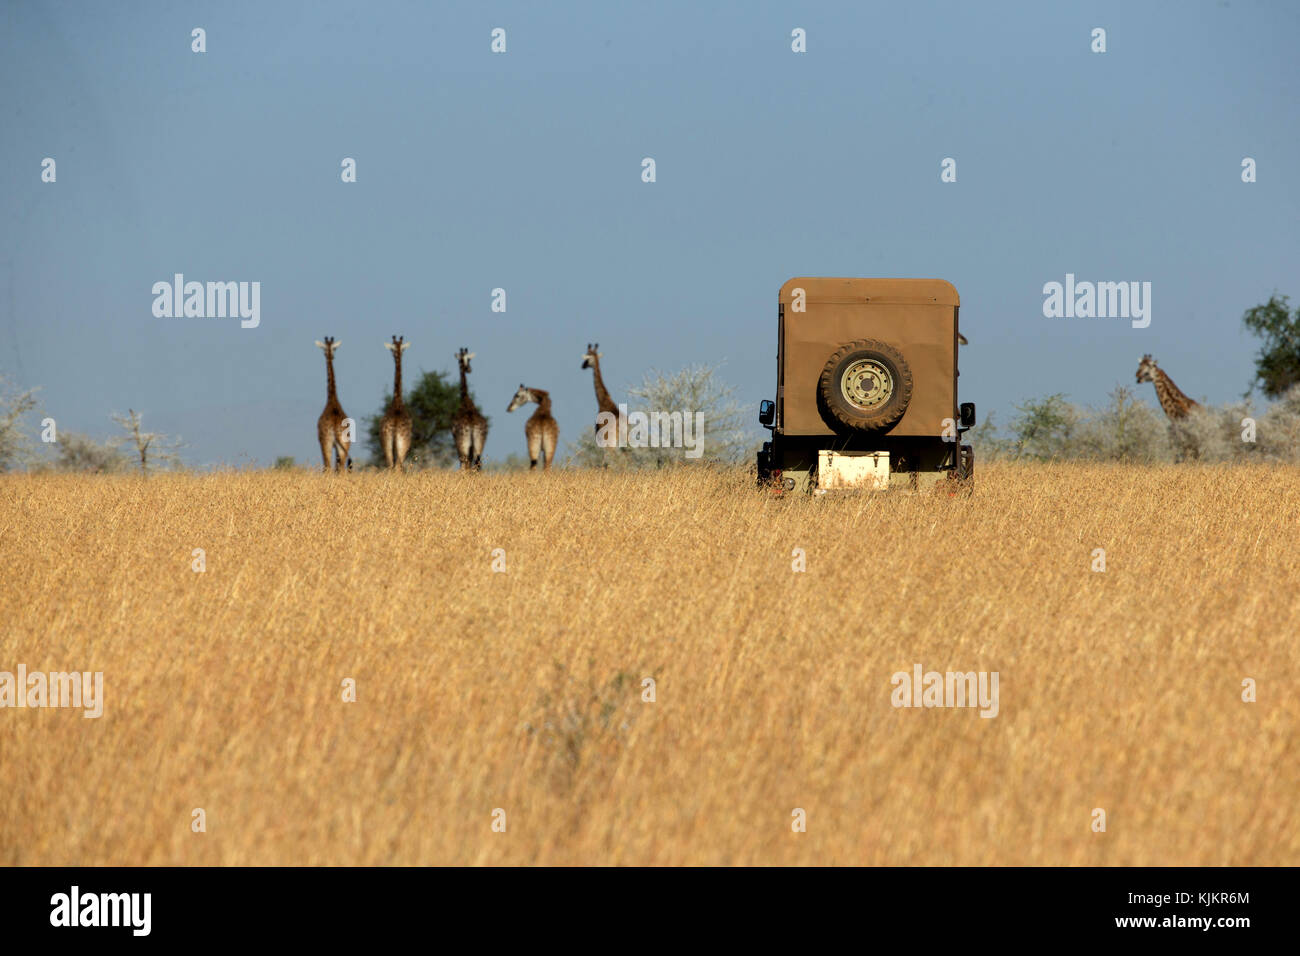 Le Parc National du Serengeti. Groupe de girafes ( (Giraffa camelopardalis ) dans les savanes avec Safari véhicule. La Tanzanie. Banque D'Images